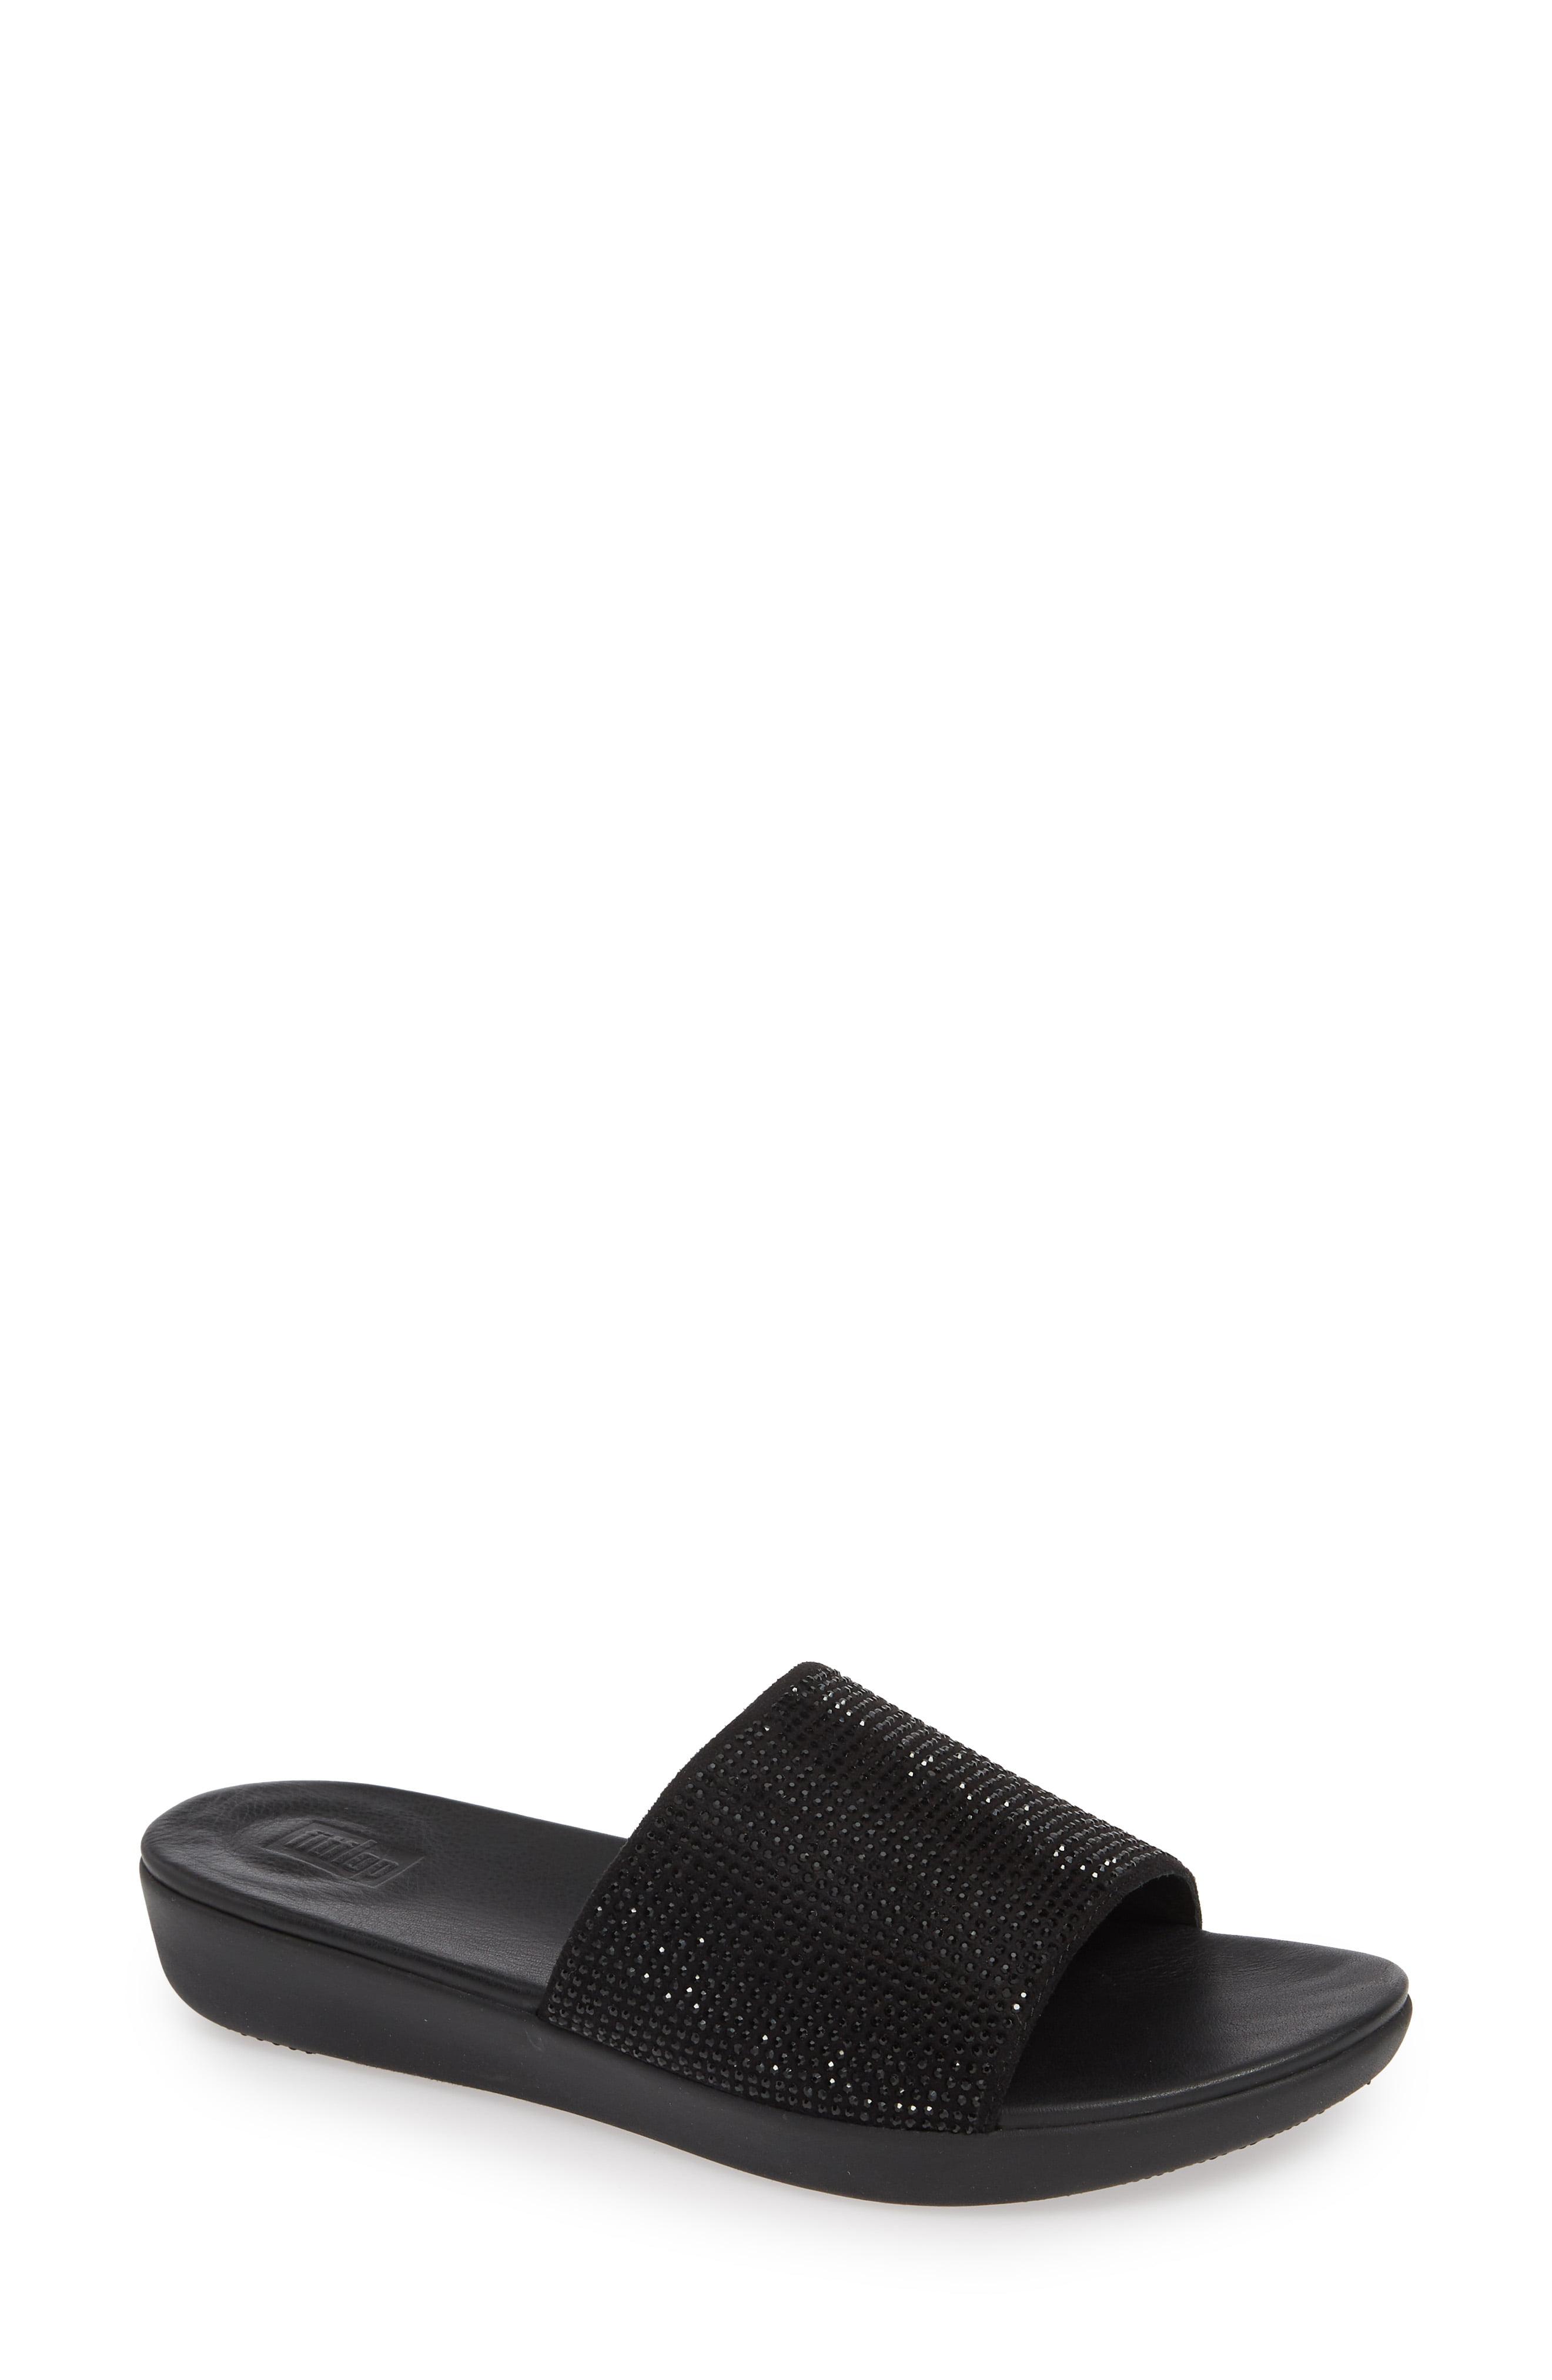 Lyst - Fitflop Sola Crystal Embellished Slide Sandal in Black